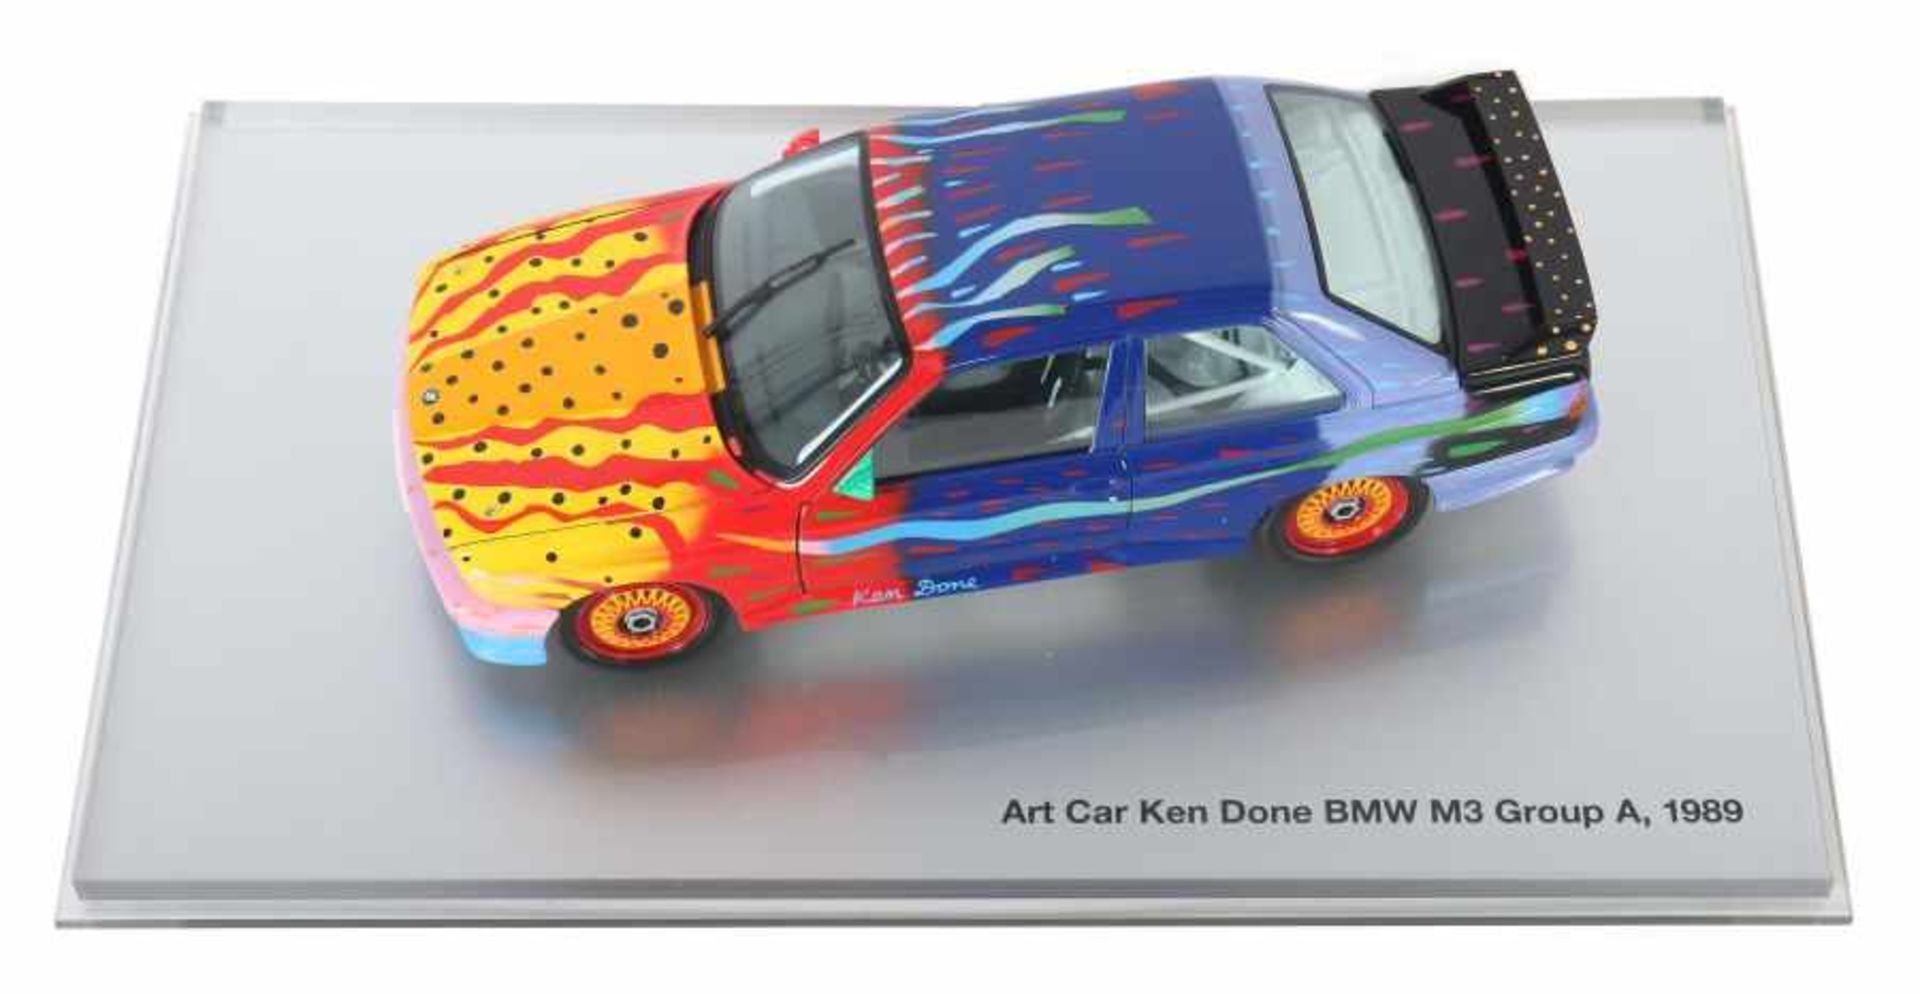 Art Car "Ken Done"